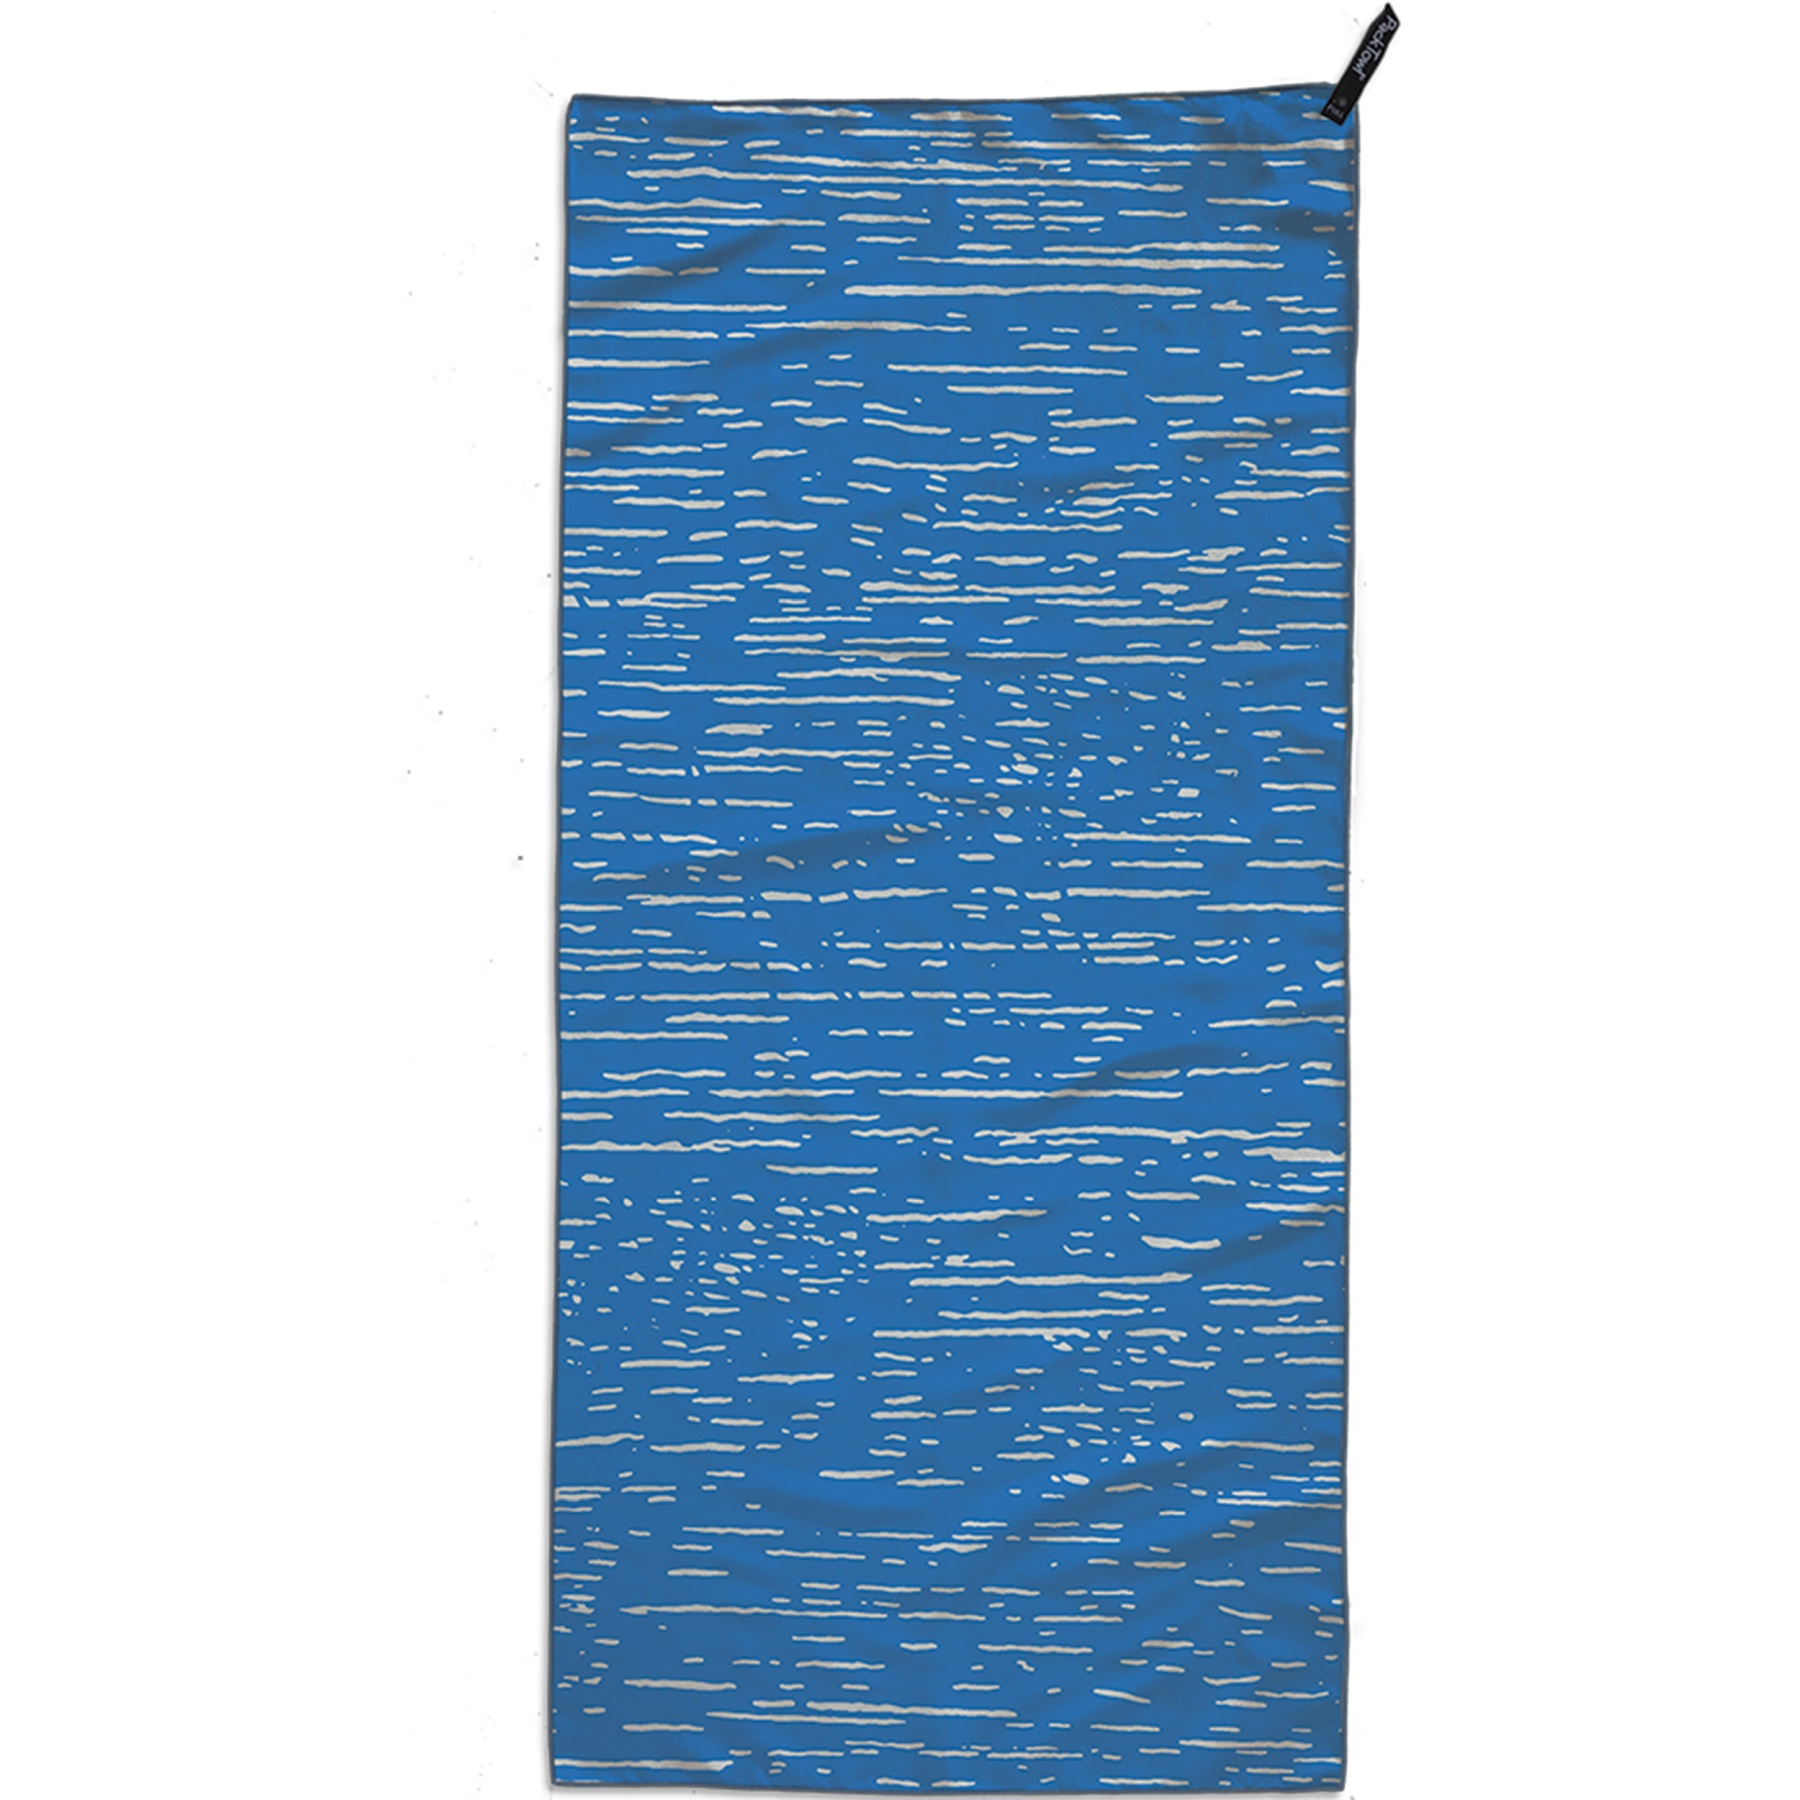 Produktbild von PackTowl Personal Beach - Handtuch - ripple print